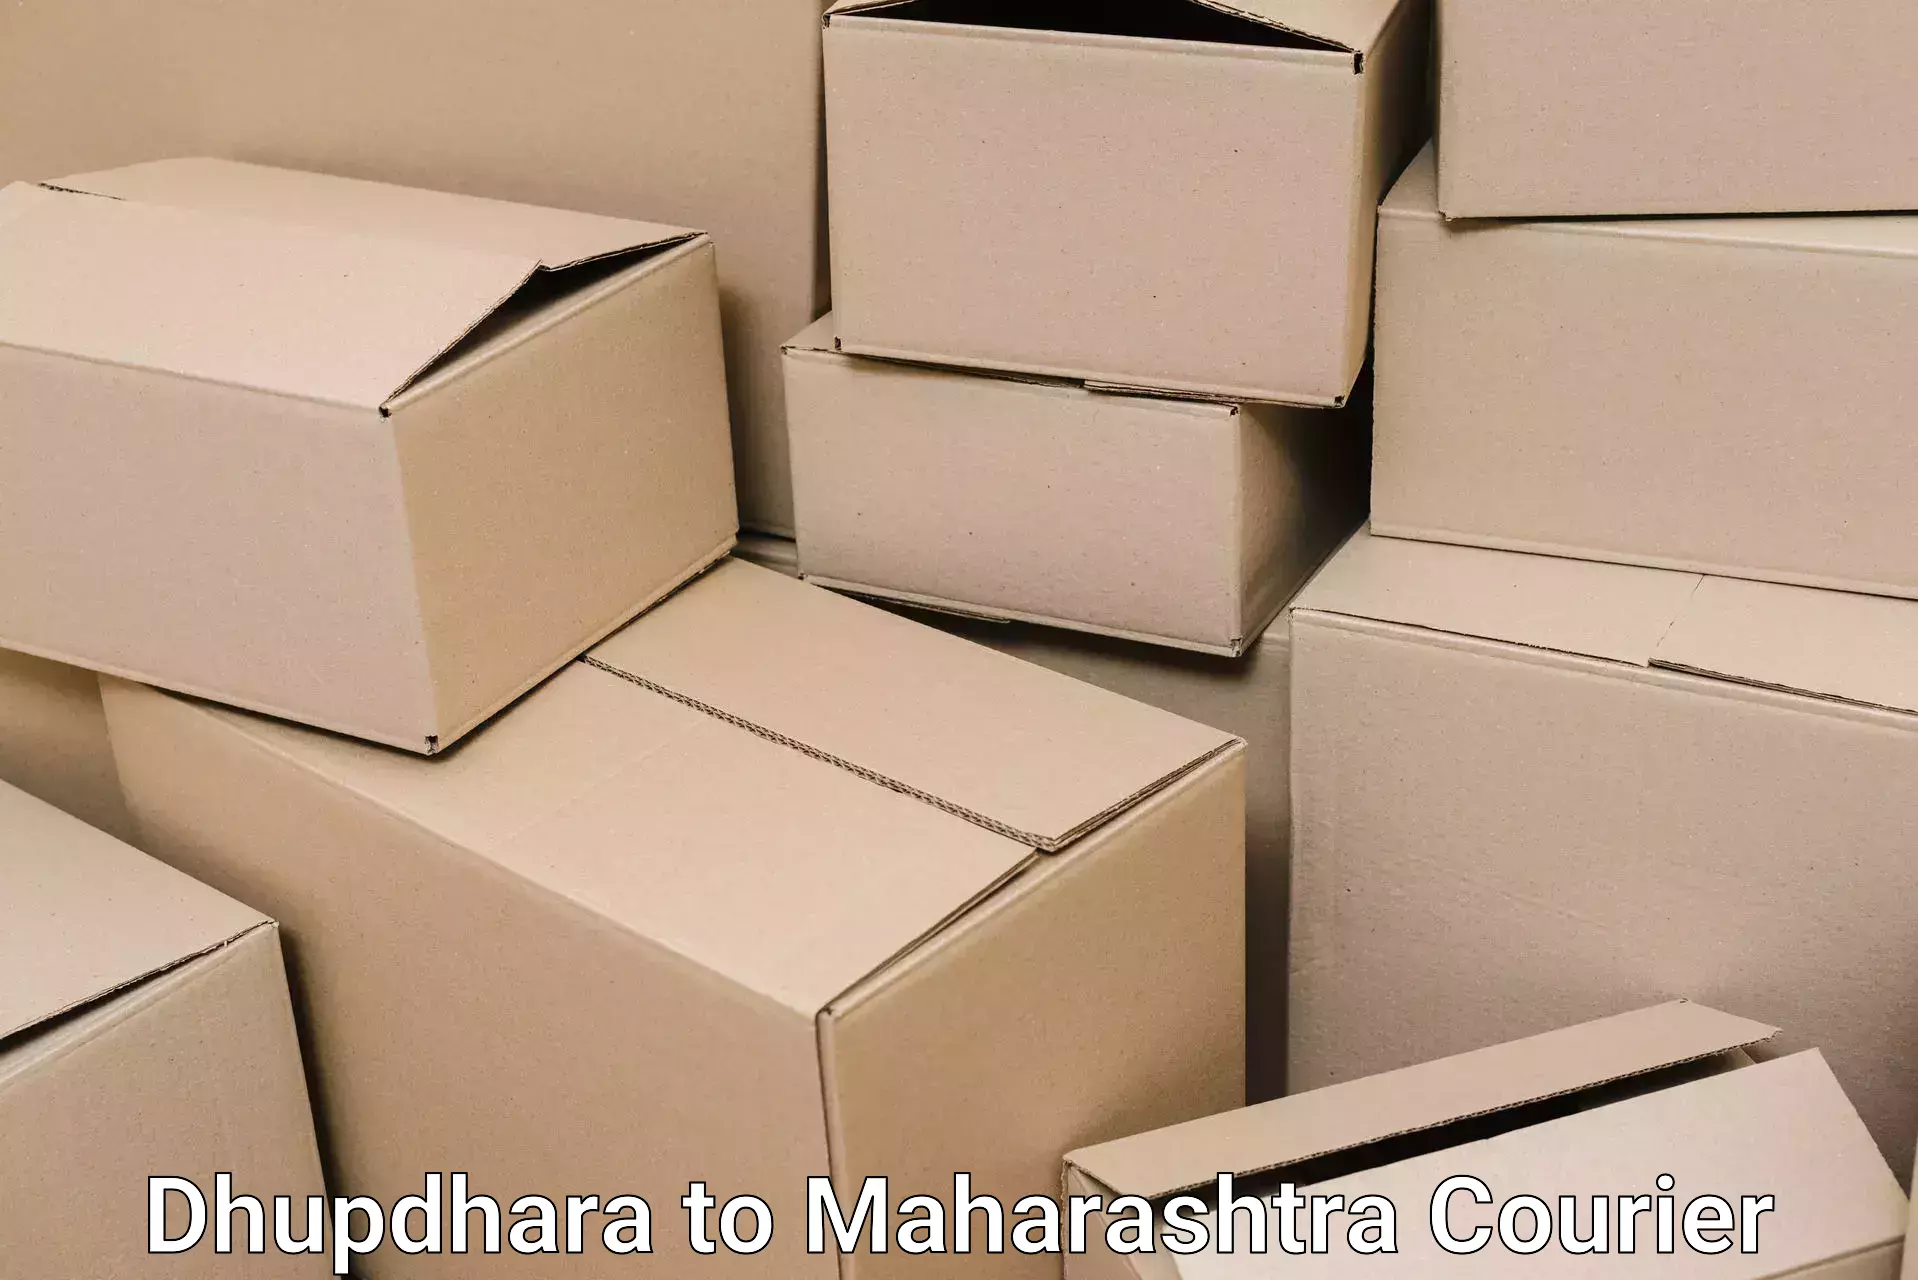 Furniture moving experts Dhupdhara to Latur